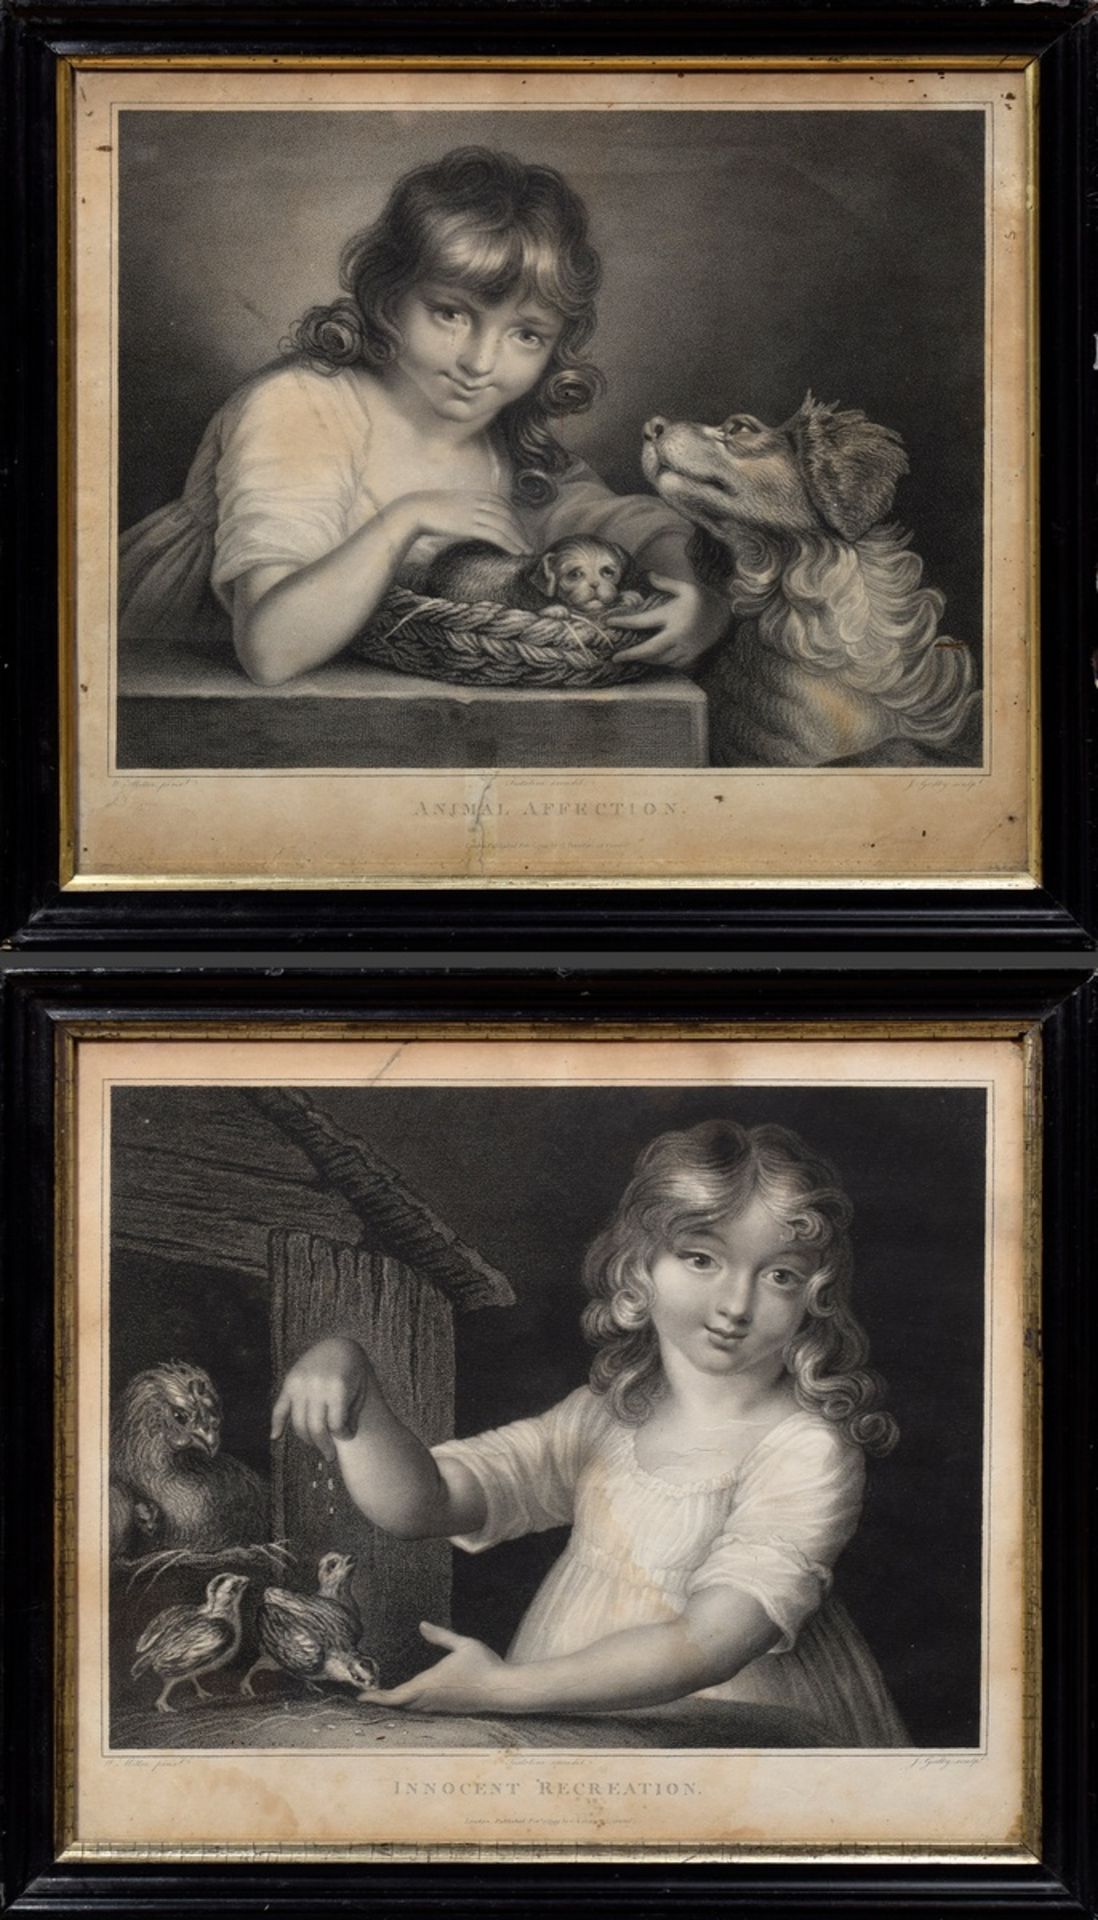 2 Miller, William (1796-1882) "Animal Affection" und "Innocent Recreation" 1799, Punktierstiche, ge